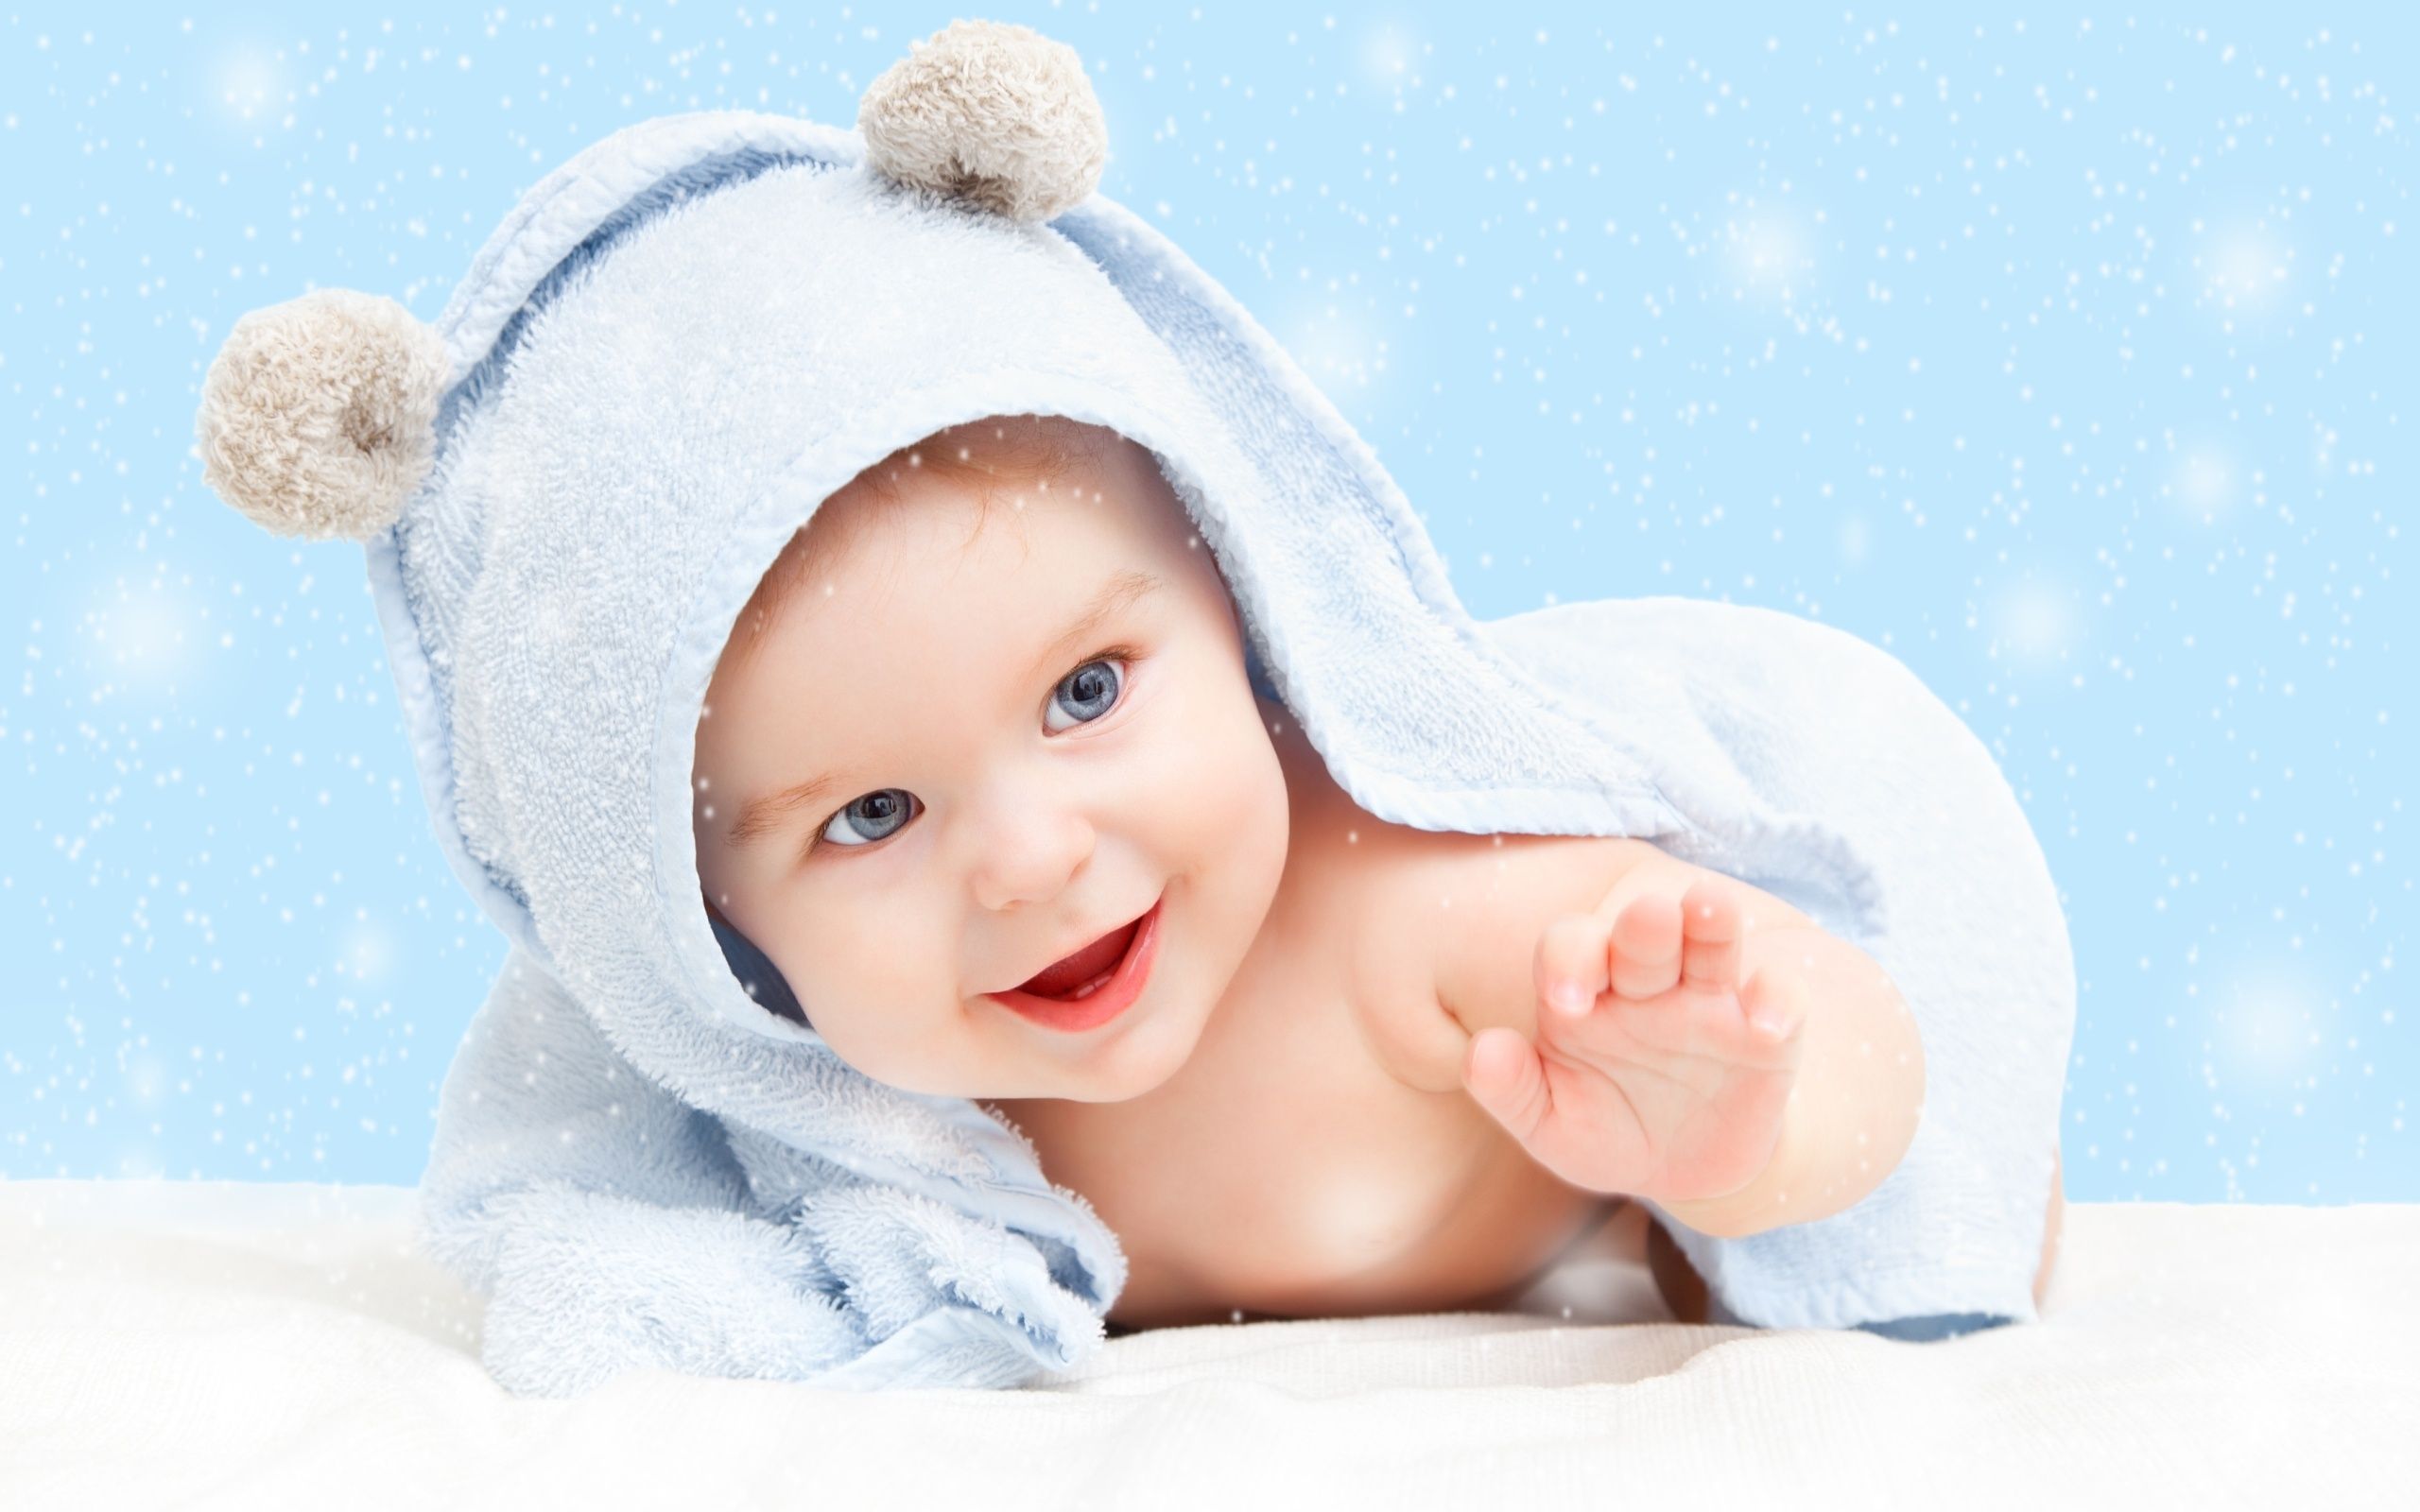 Cute Baby Style HD Wallpaper 1316 - Cute Baby HD Wallpaper